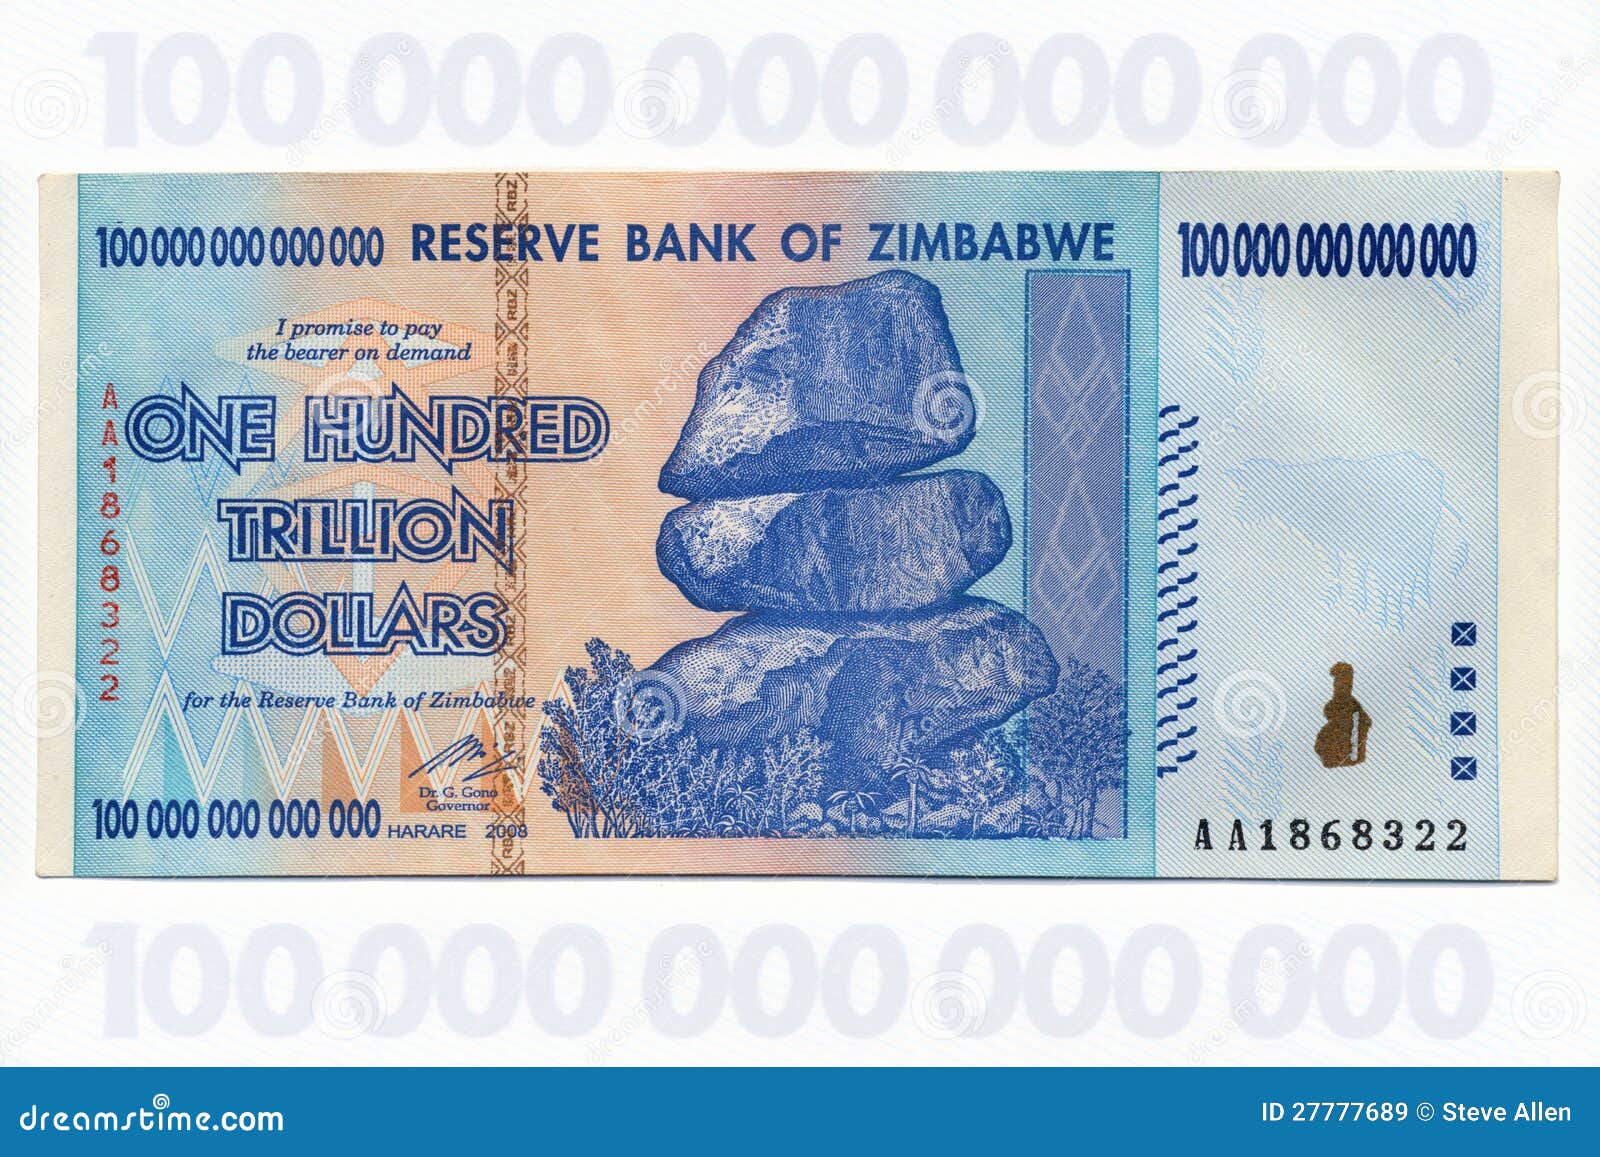 One Hundred Trillion Dollars - Zimbabwe Stock Image | CartoonDealer.com